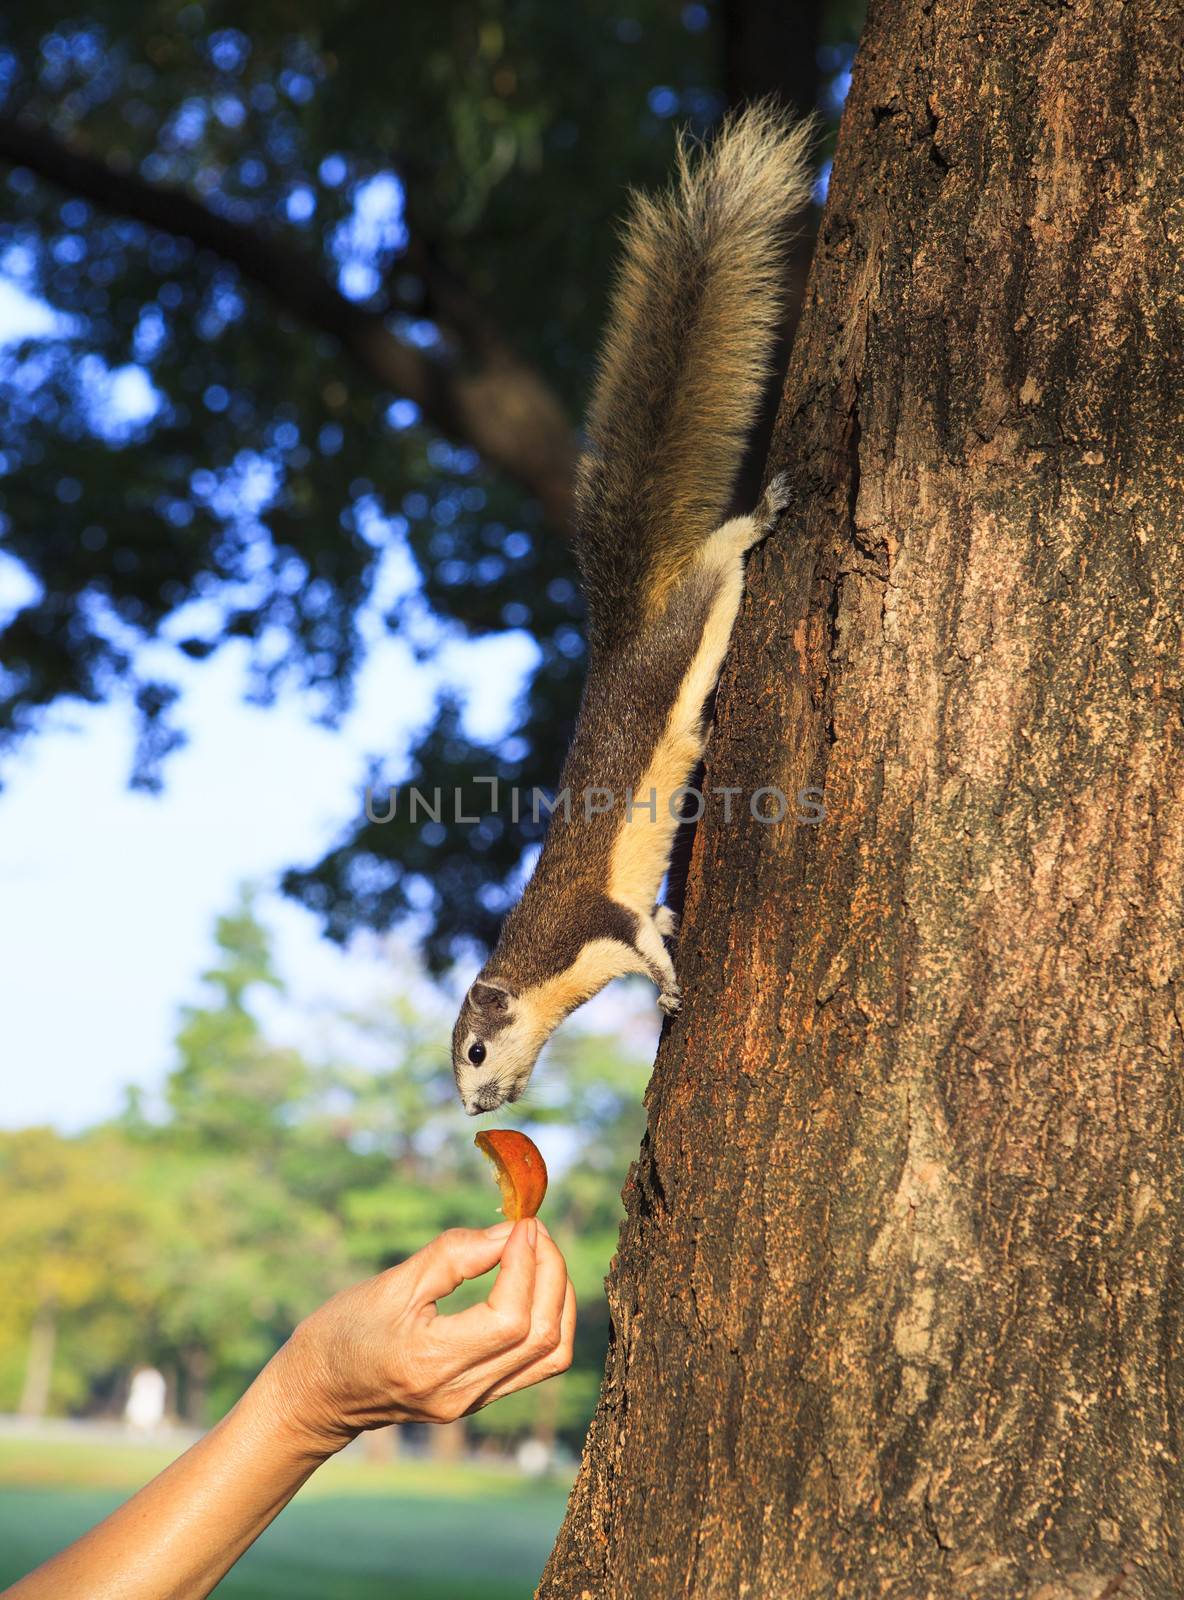 human hand feeding sone food for wild squirrel in public park